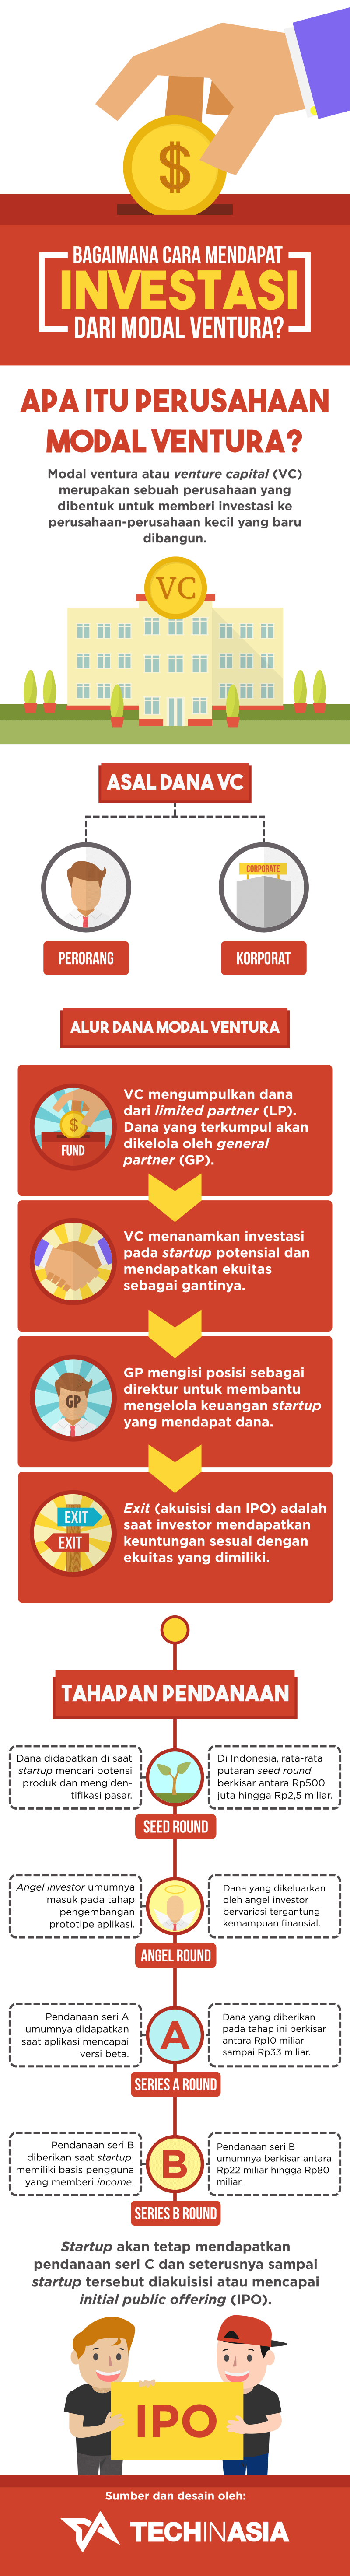 Infografis Cara Mudah Mendapatkan Investasi